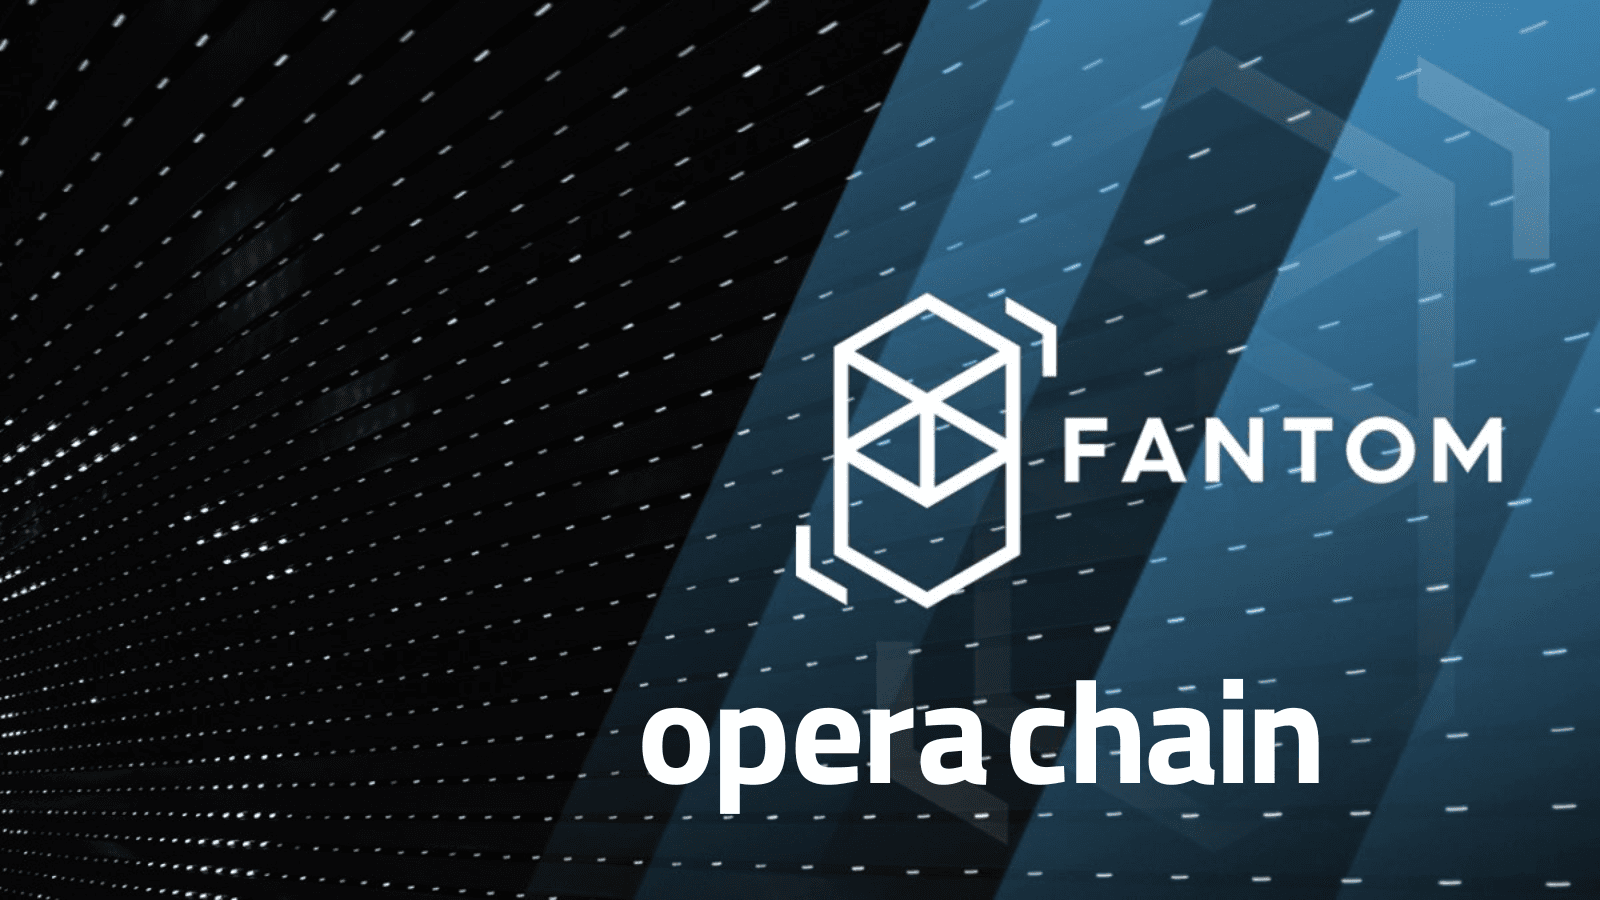 زنجیره اپرا (Opera Chain)